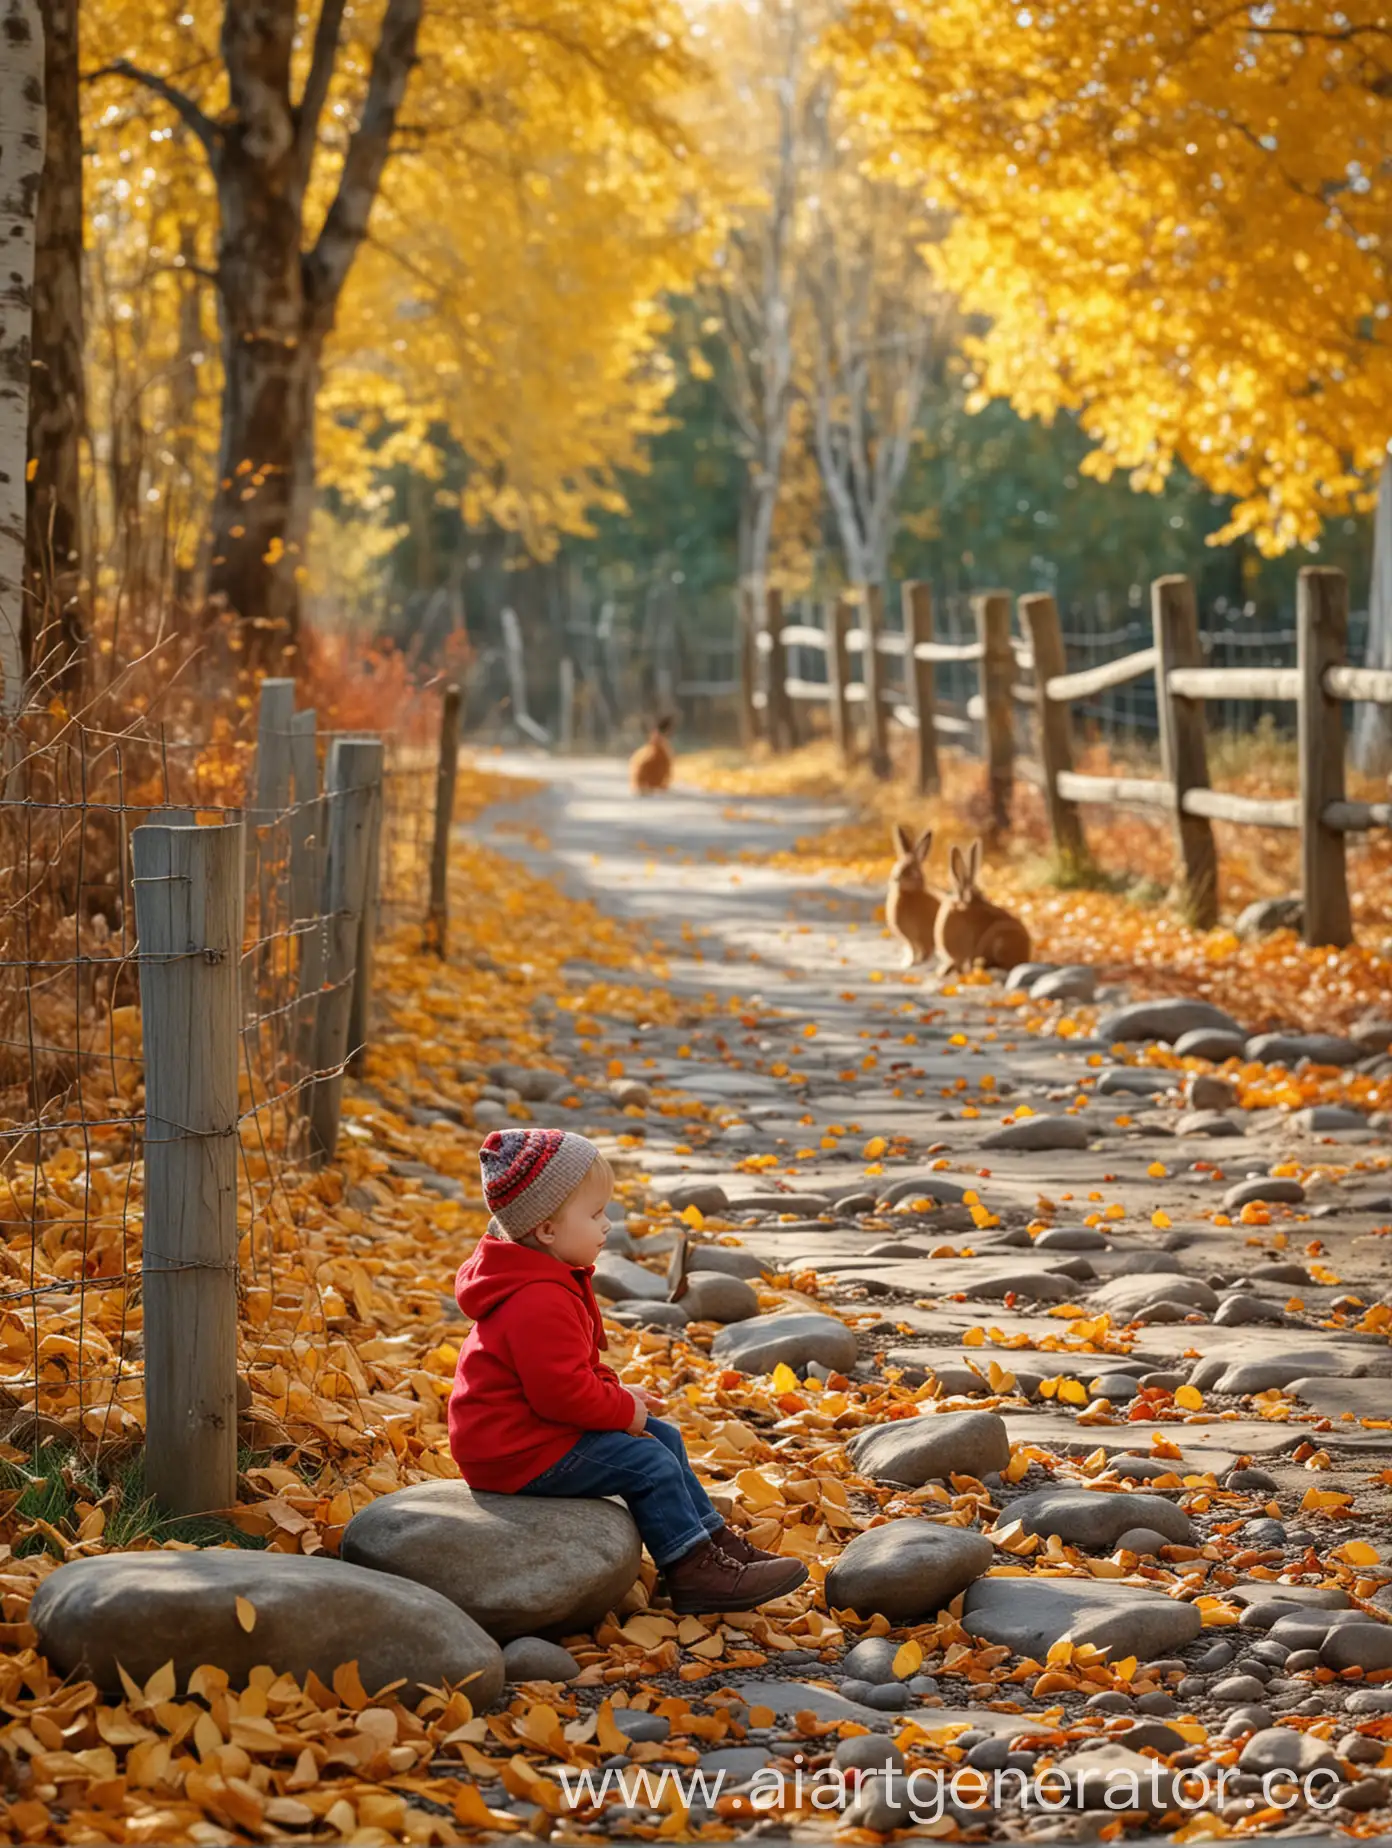 Маленький ребенок сидит на камне, рядом забор, под ногами опавшие желтые листья, осень, падают желтые листья, рядом сидят рыжие зайцы, на фоне осенний лес, фон размыт, очень реалистично